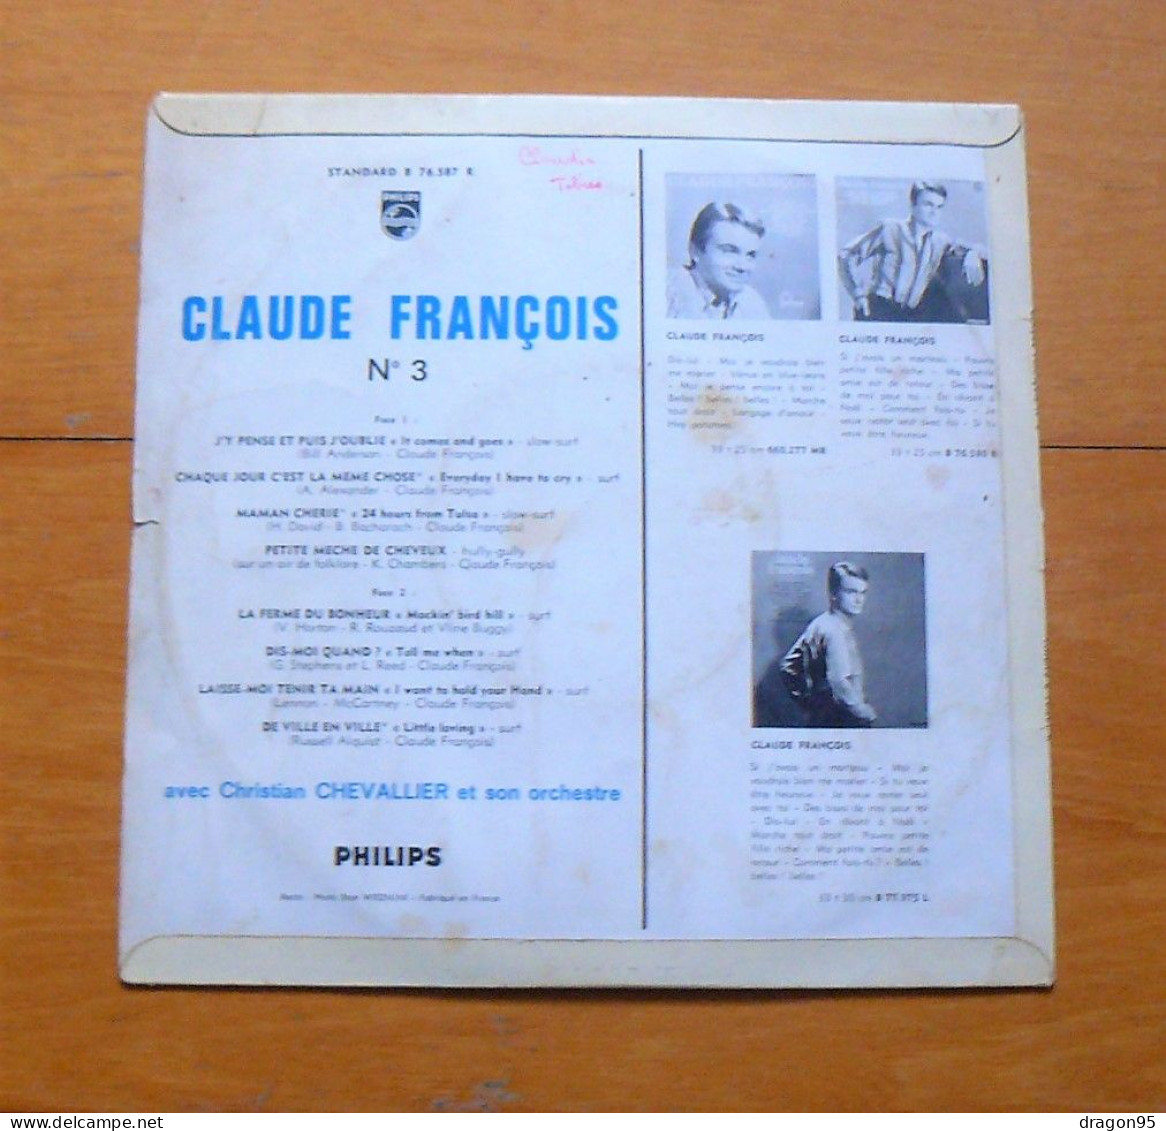 25 Cm Claude FRANCOIS : J'y Pense Et Puis J'oublie - Philips B 76.587 R - France - Other - French Music